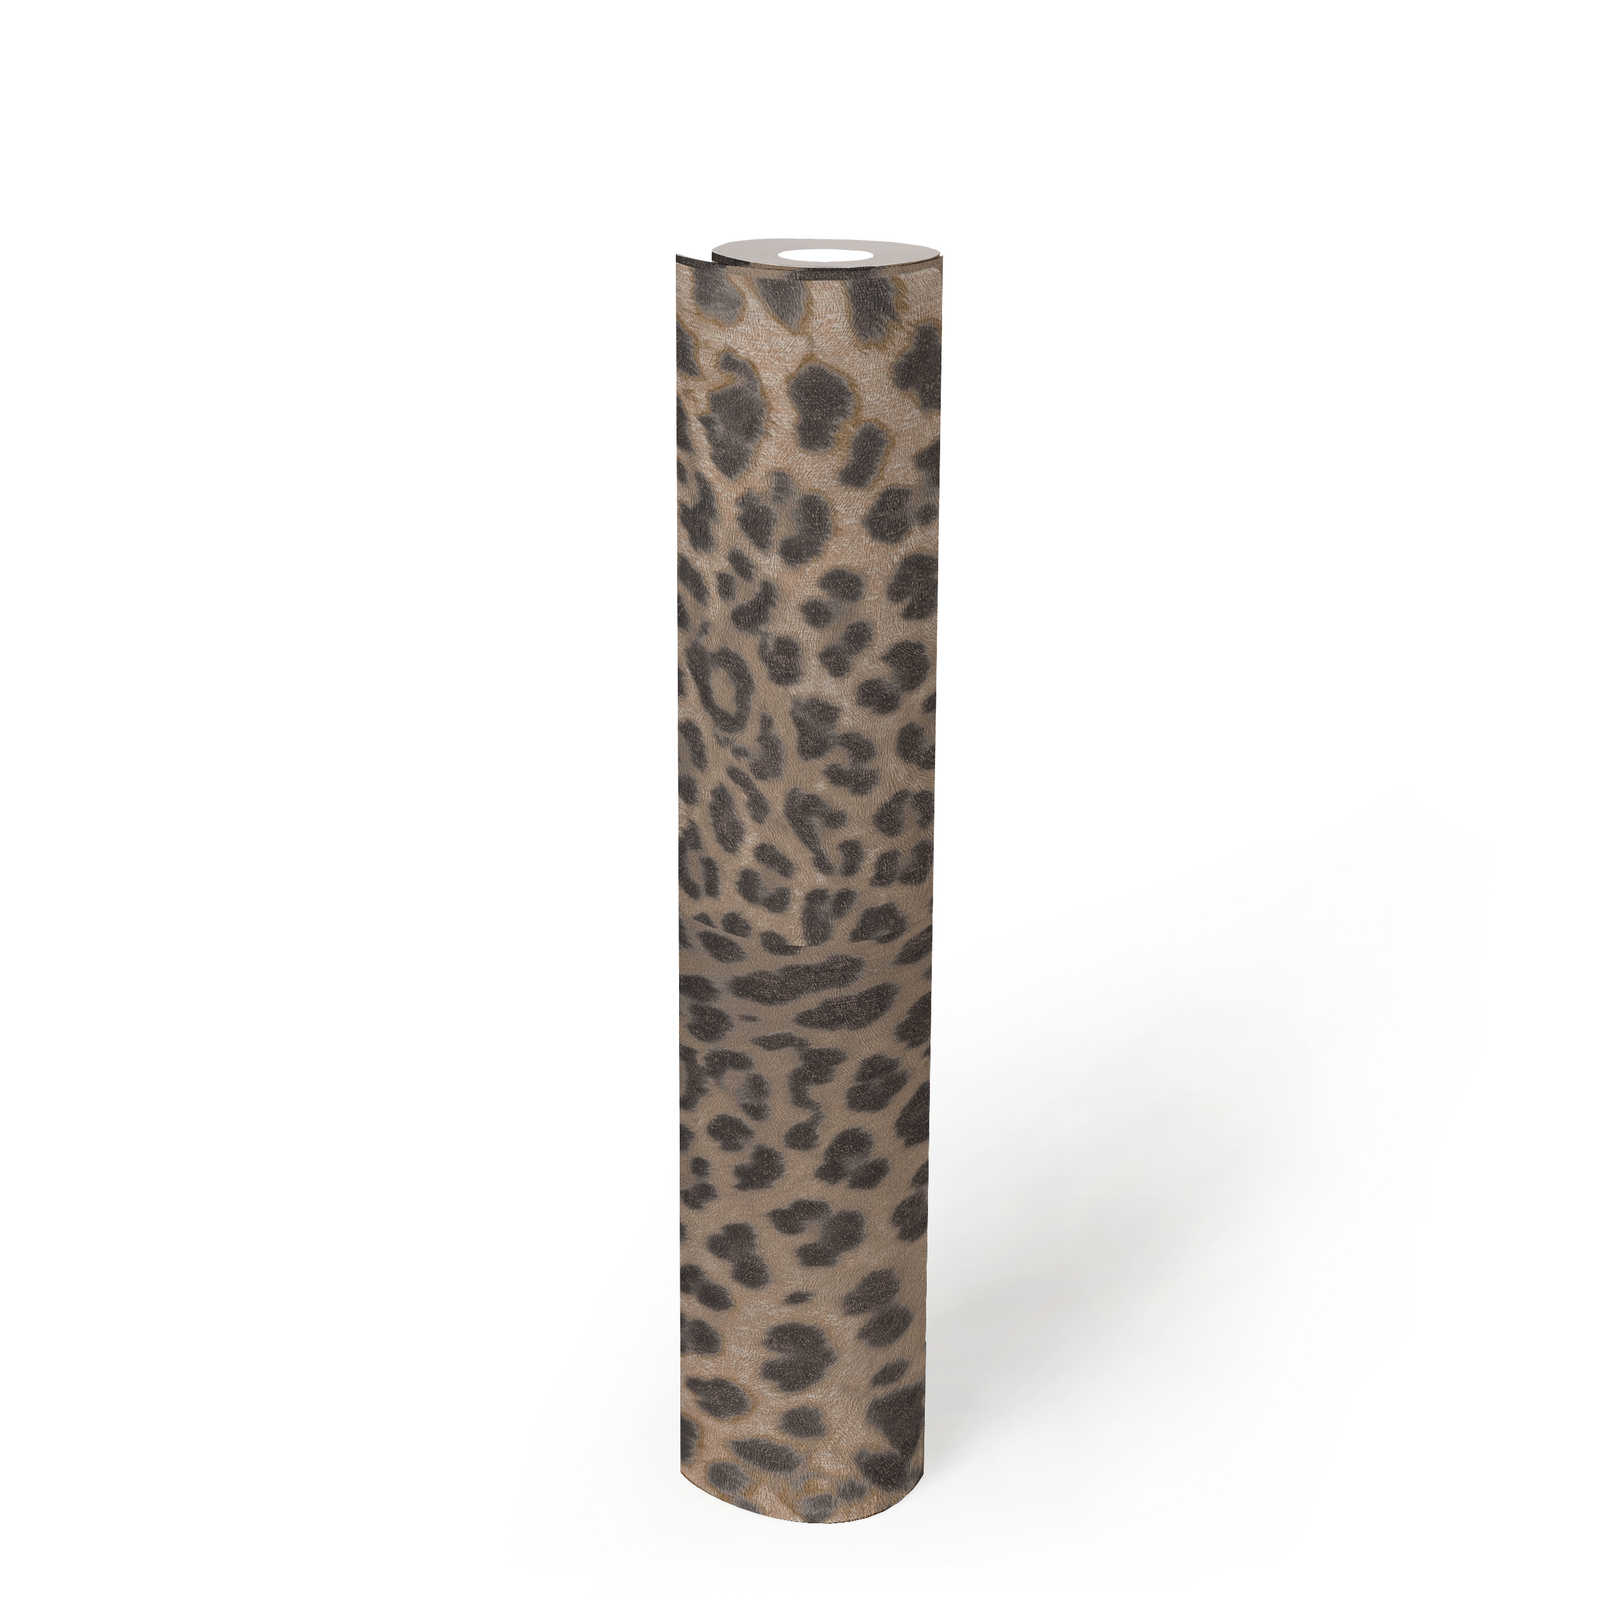             Animal print wallpaper leopard pattern - beige, grey
        